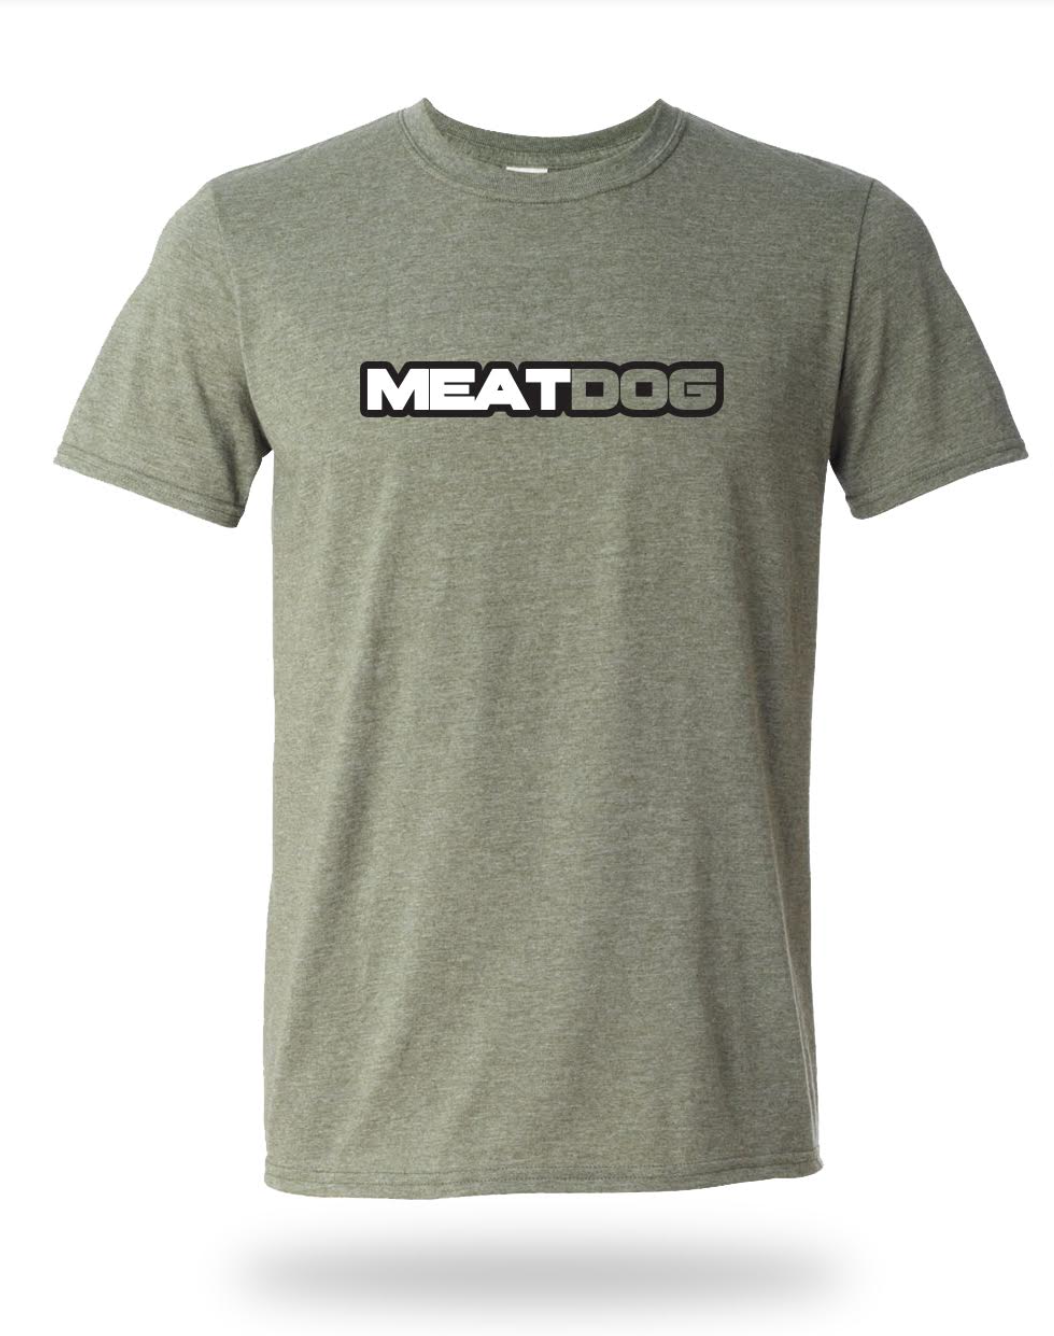 MEATDOG Text Shirt